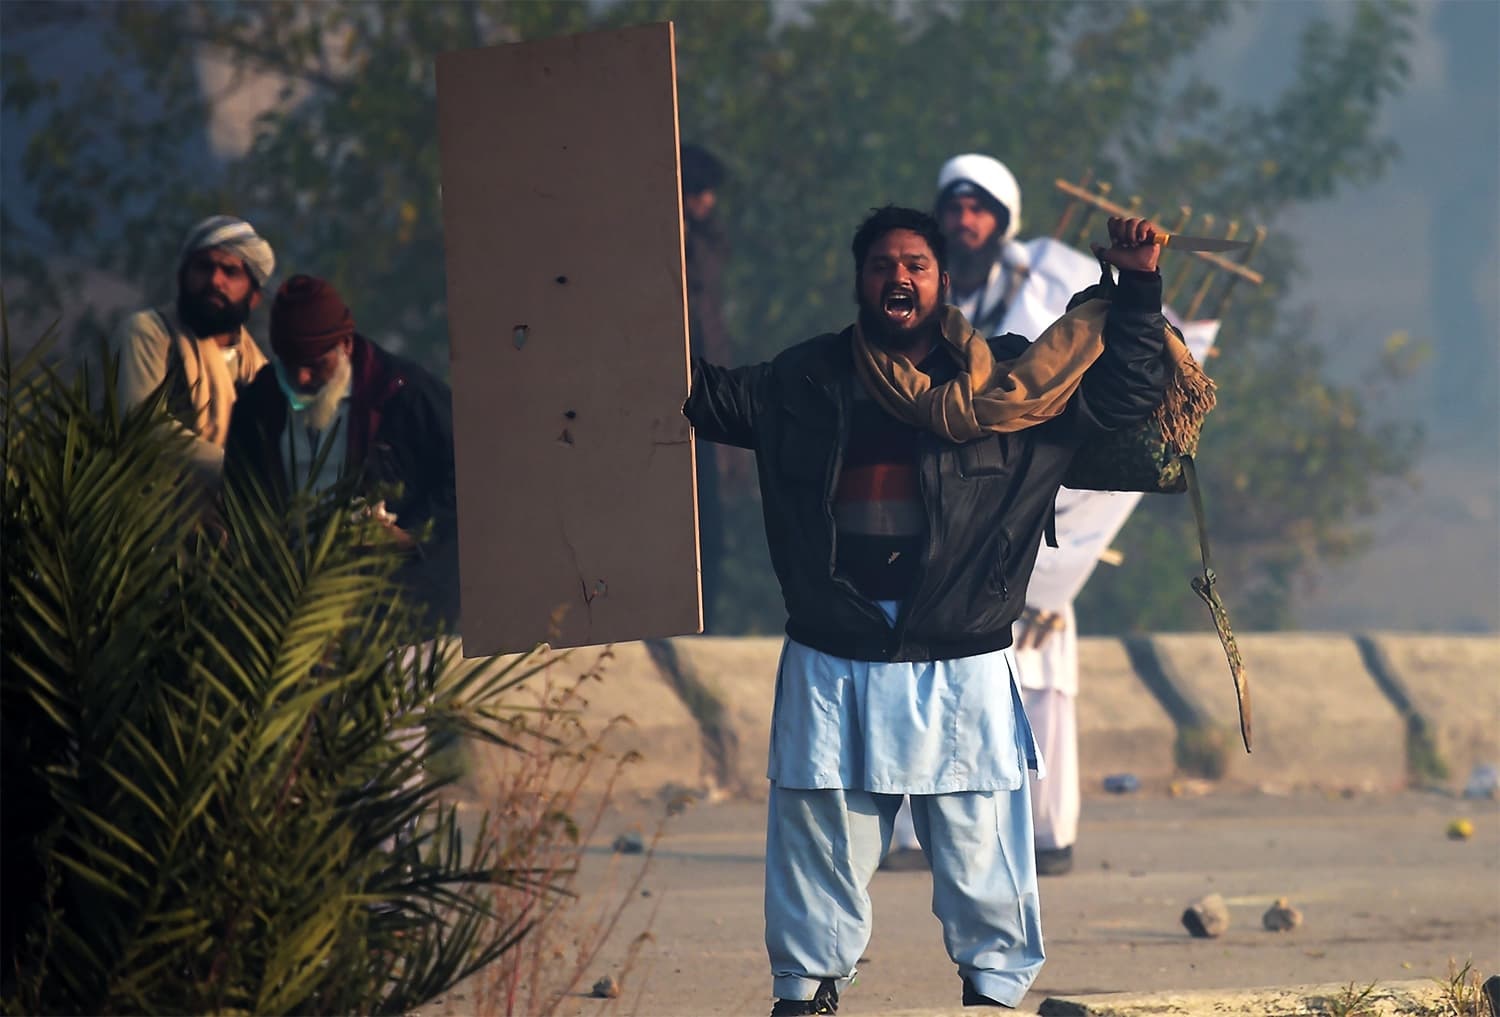 تصاویر | درگیری خونین پلیس پاکستان با معترضان به حذف قانون سوگند به ختم نبوت